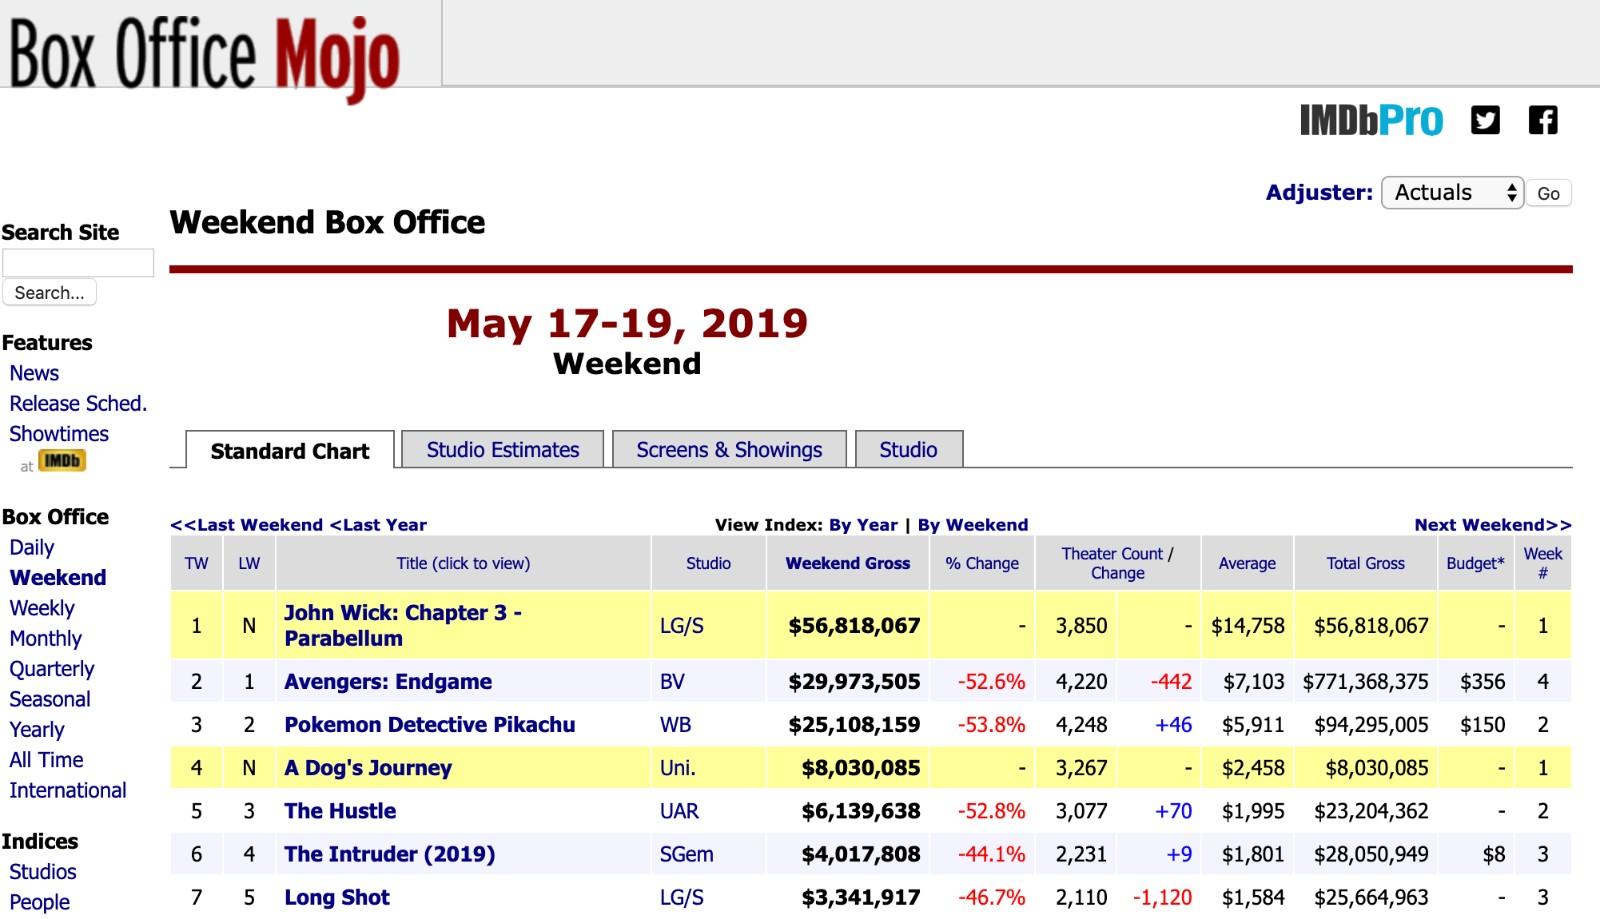 Il mio amico Massimo - Box Office Mojo